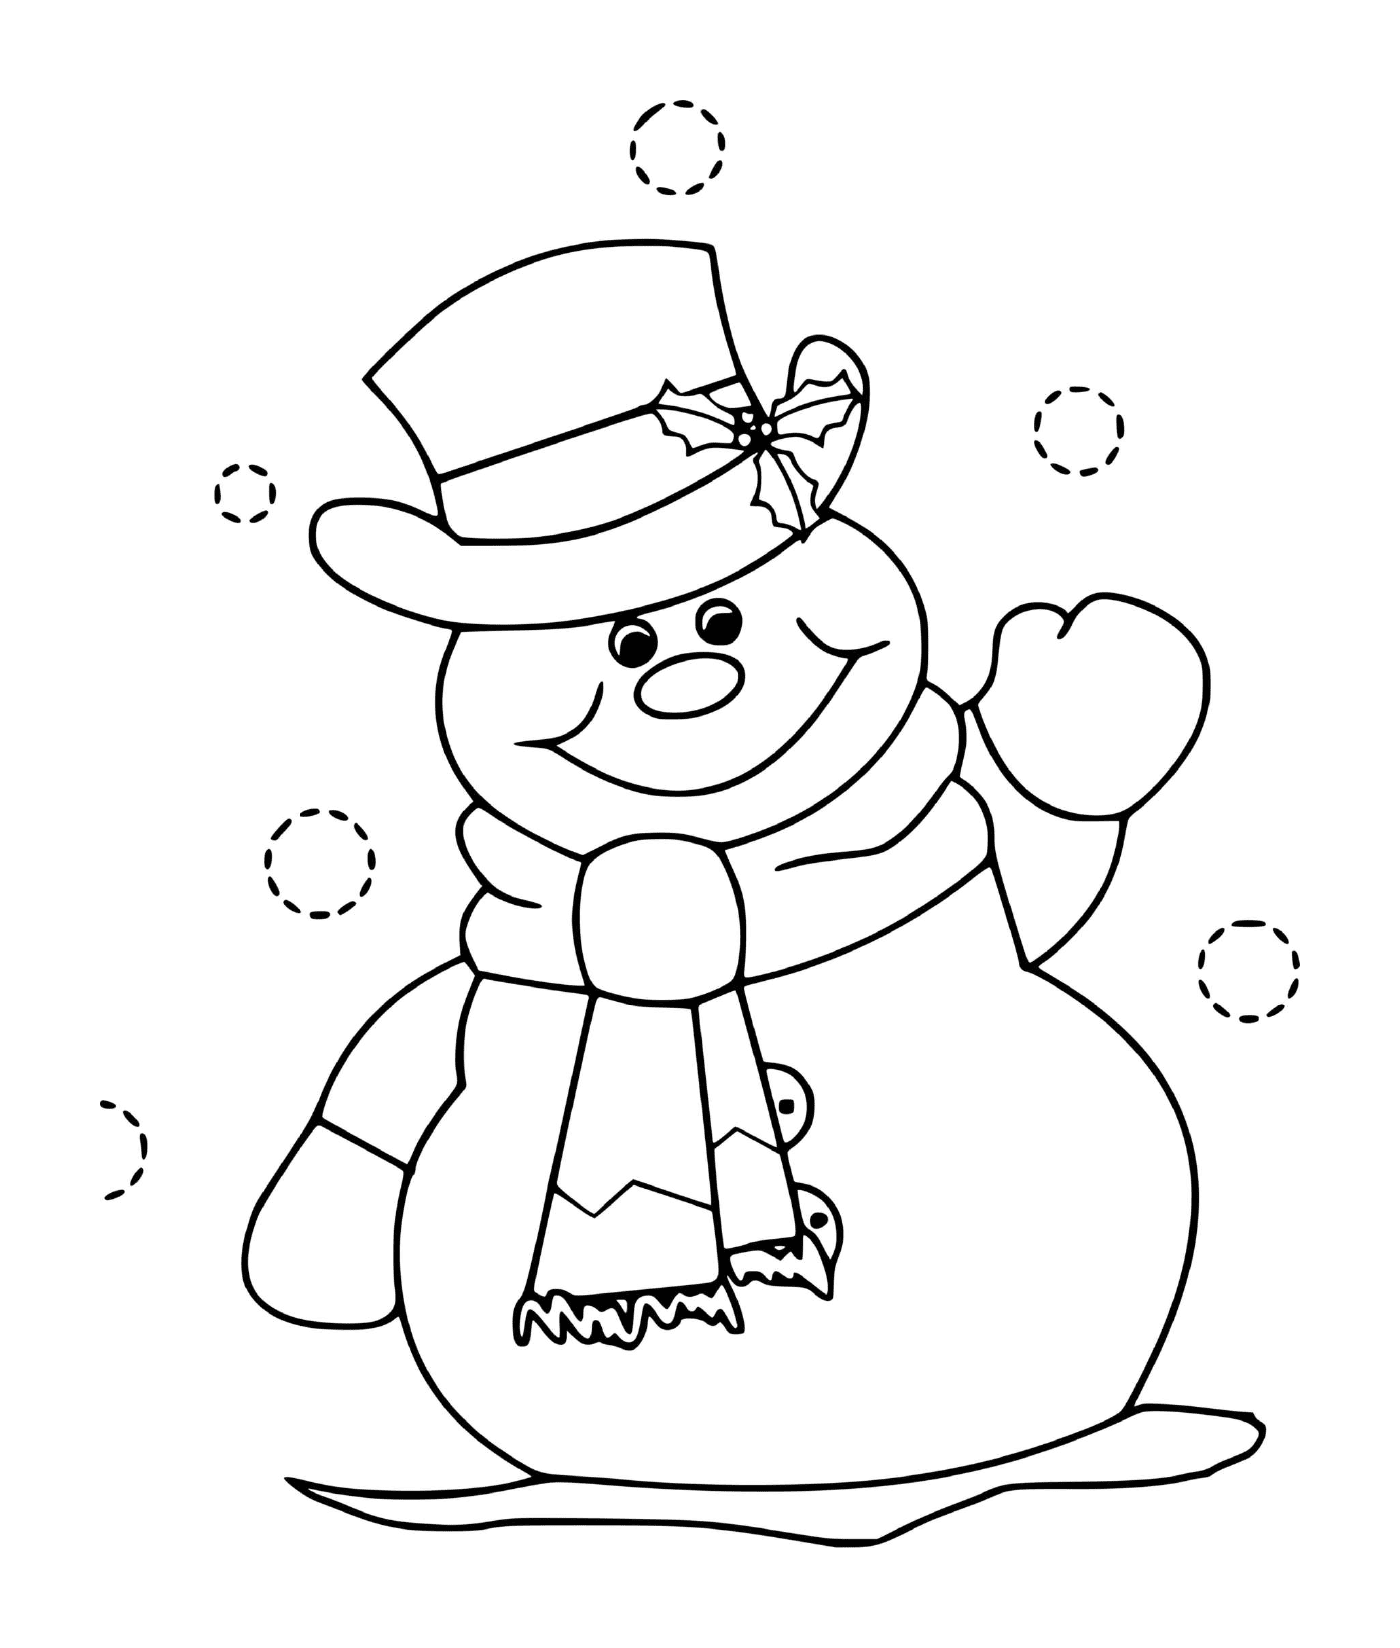   Bonhomme de neige d'hiver, chapeau souriant 